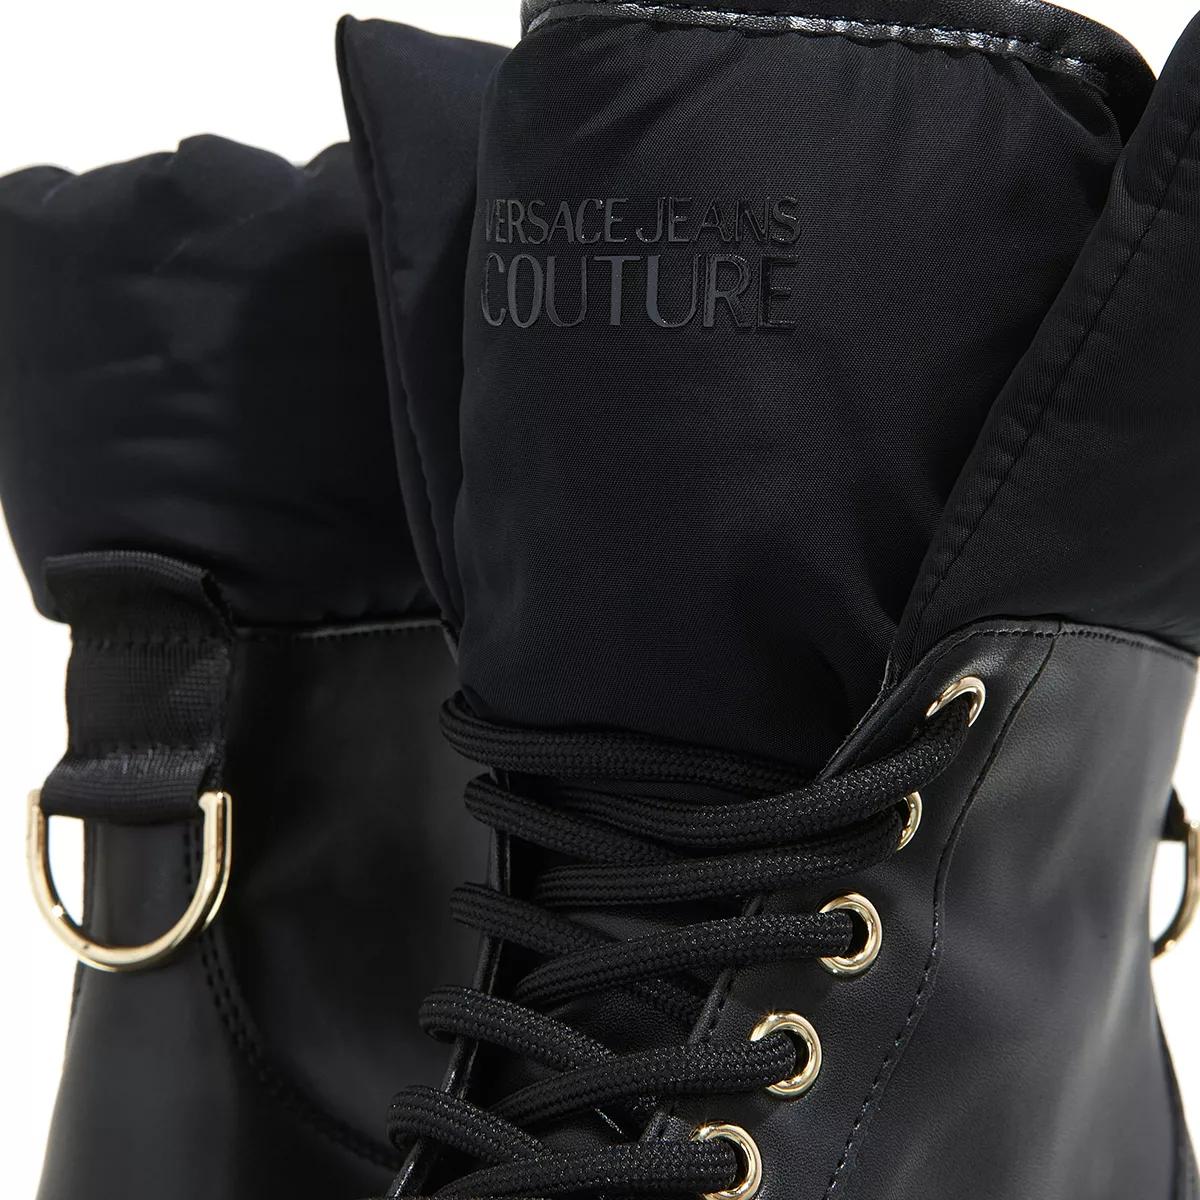 Versace Jeans Couture Boots & Stiefeletten - Fondo Drew - Gr. 35 (EU) - in Schwarz - für Damen von Versace Jeans Couture